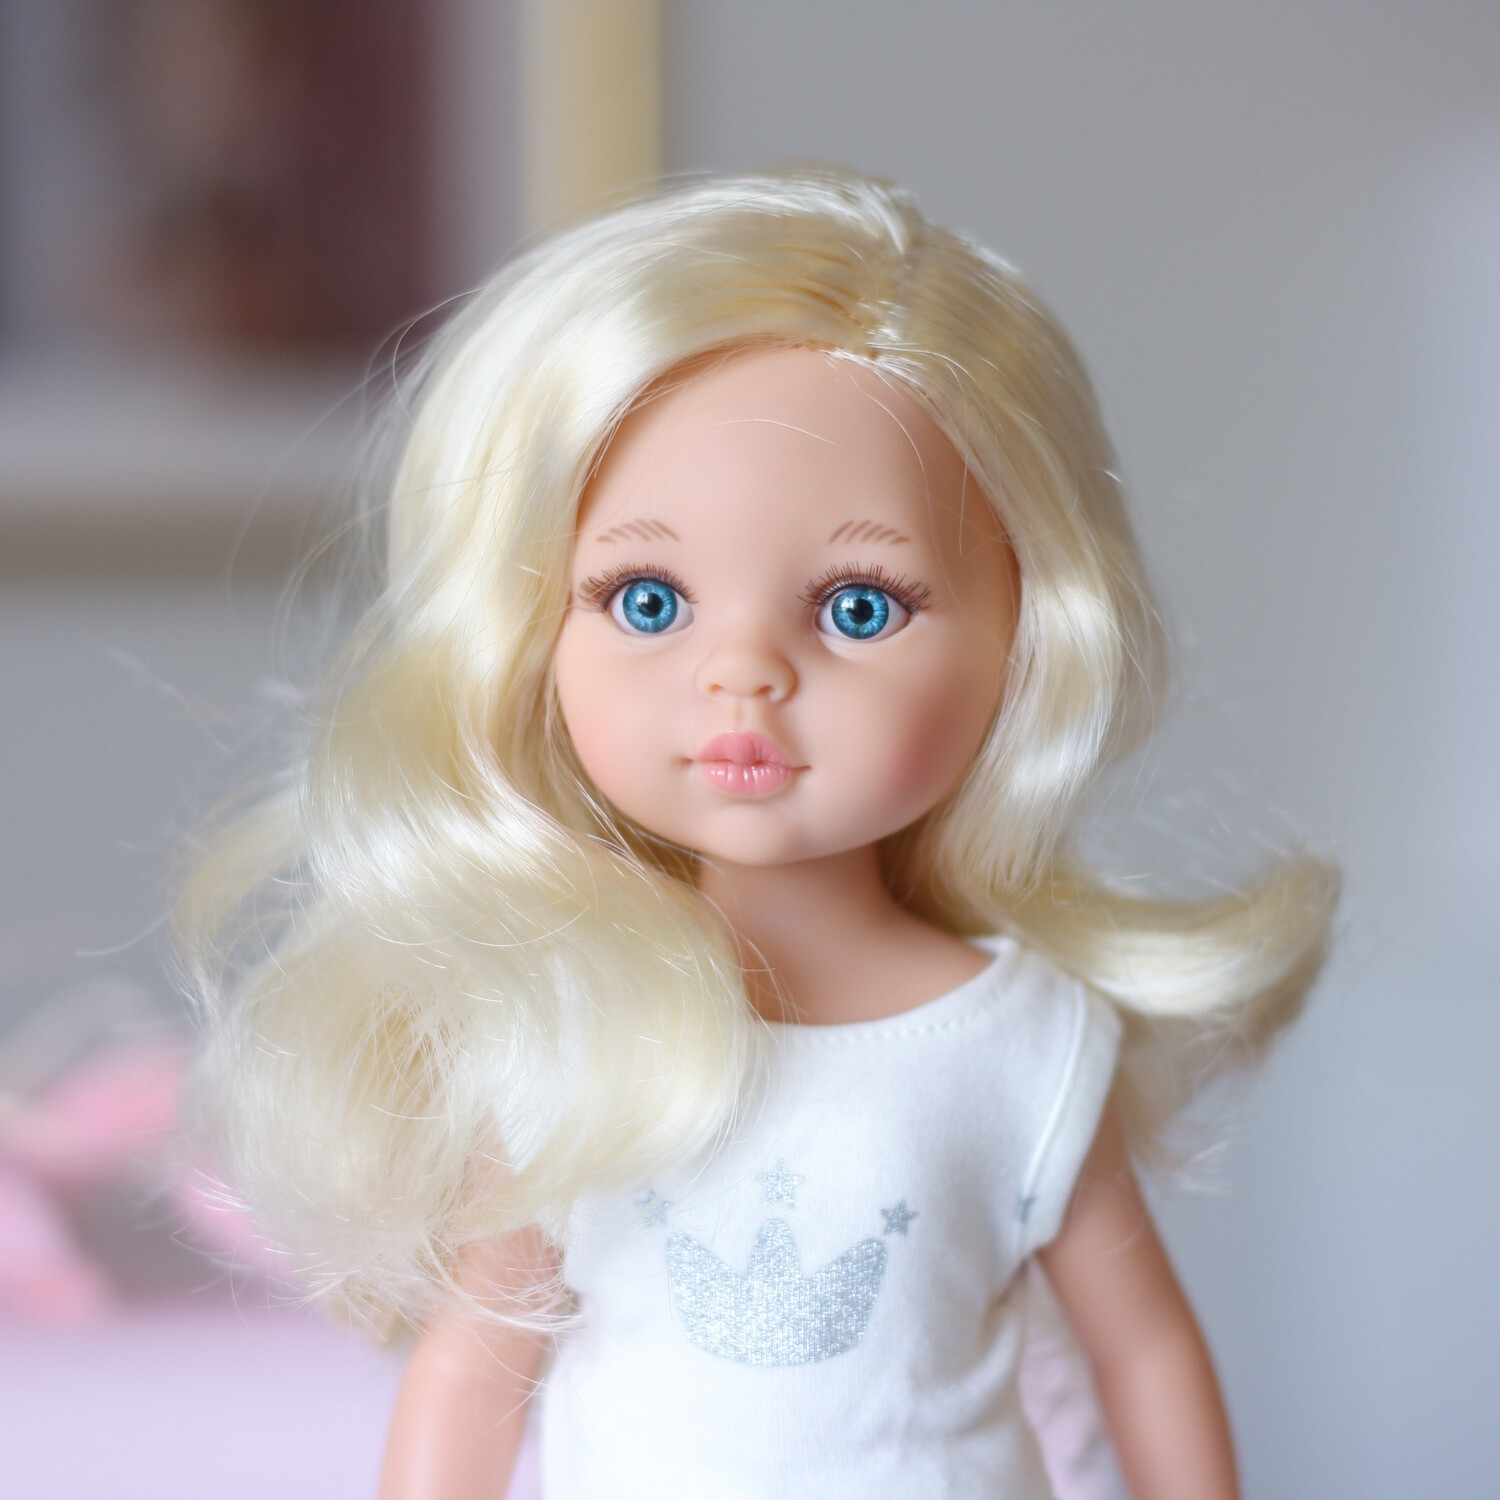 Клаудиа в фабричной пижаме, волнистые волосы, глаза голубые